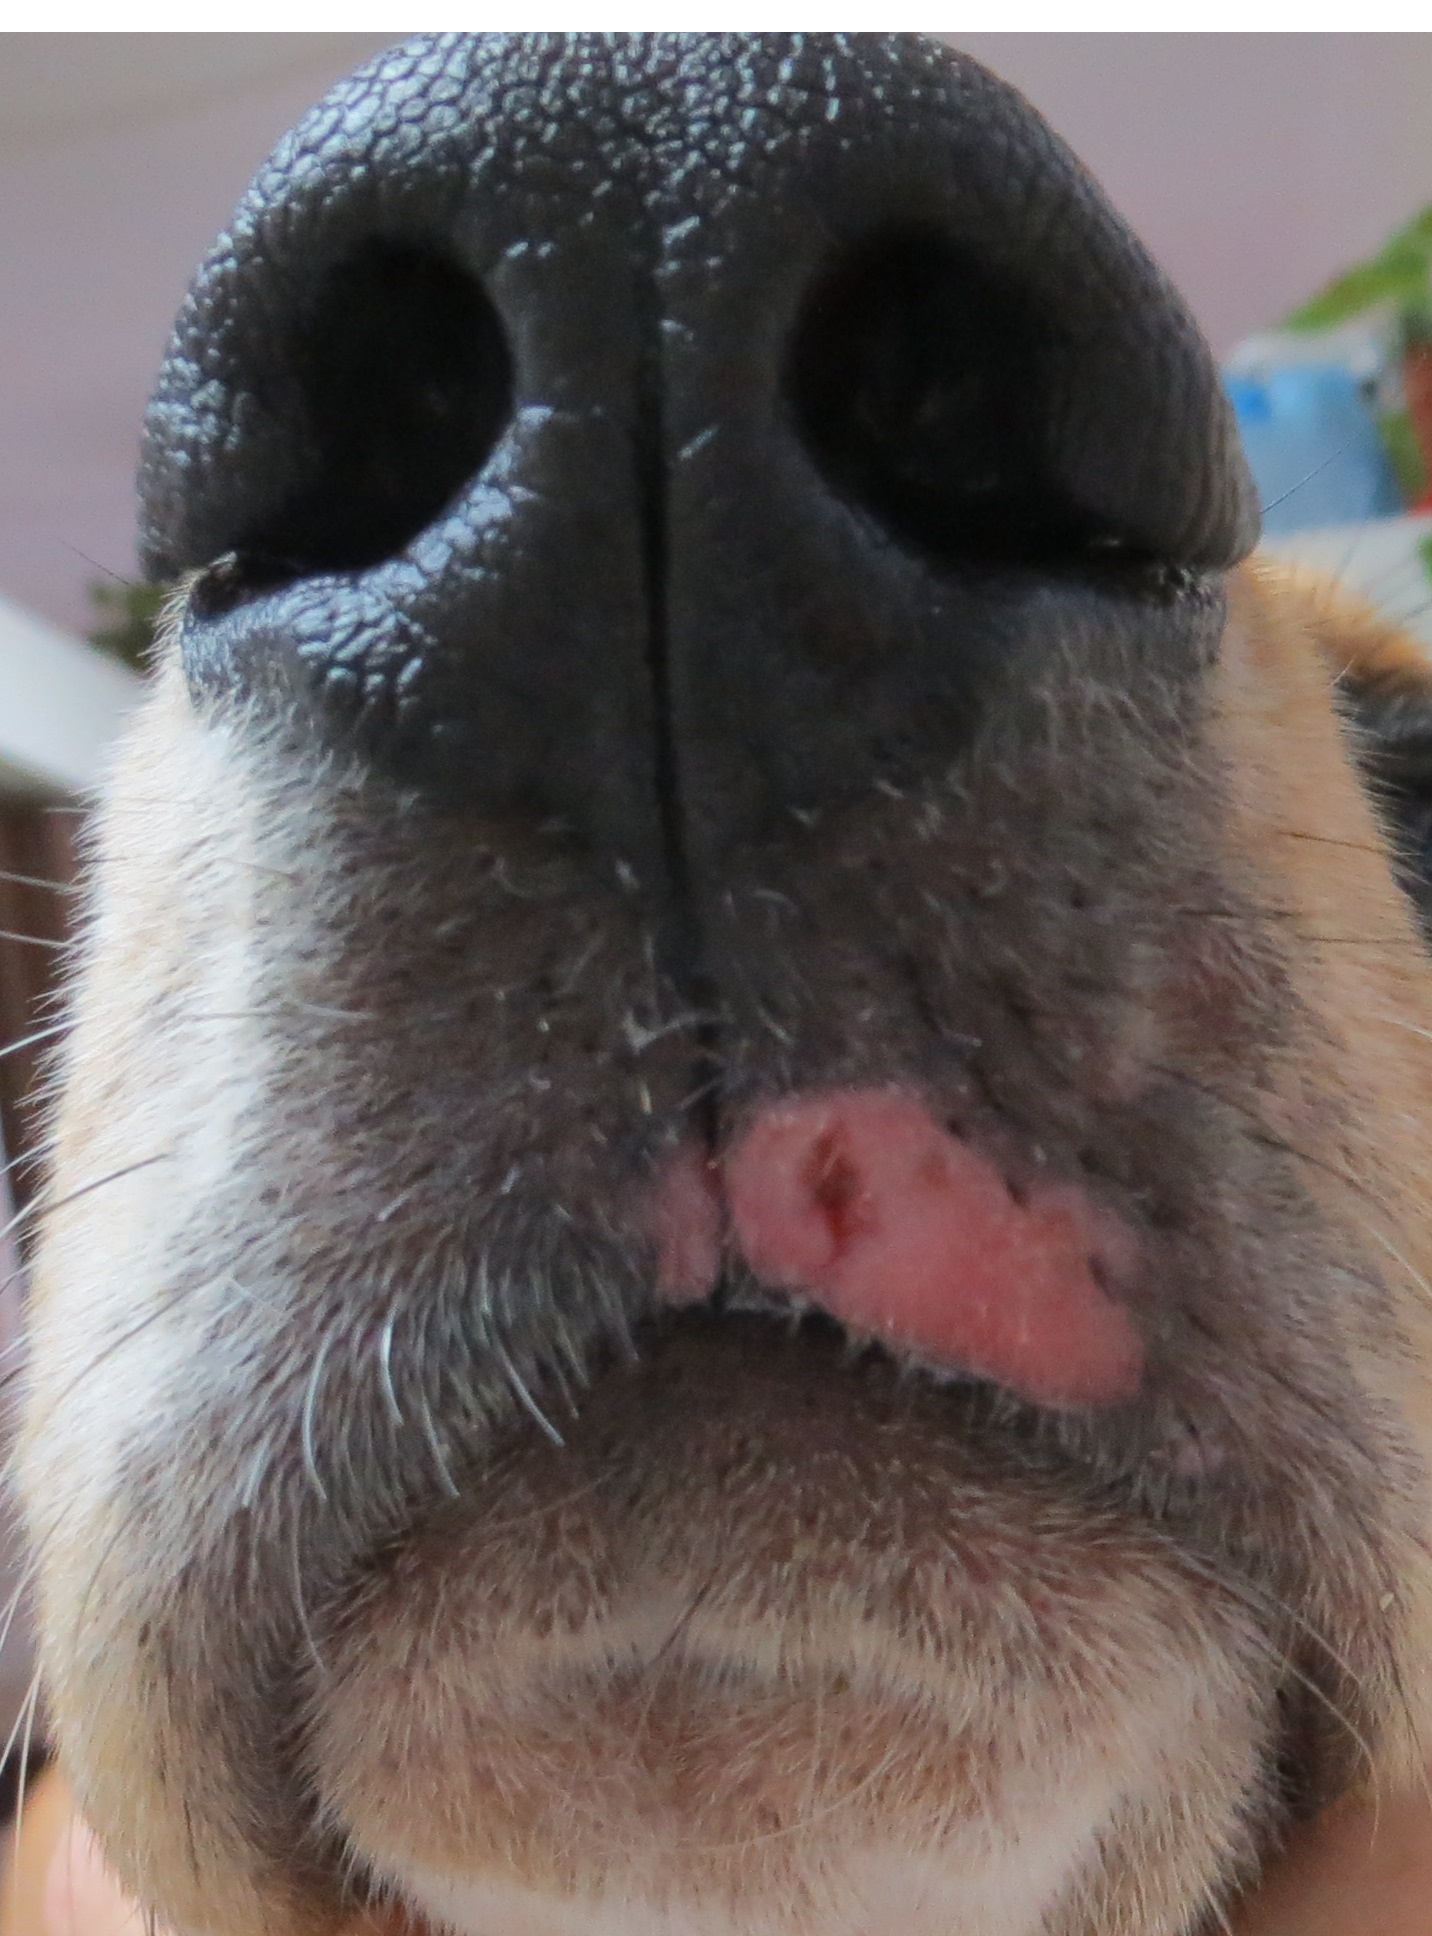 Tratamiento de papilomatosis en perros - virgilbaciu.ro - Tratamiento de papilomatosis en perros